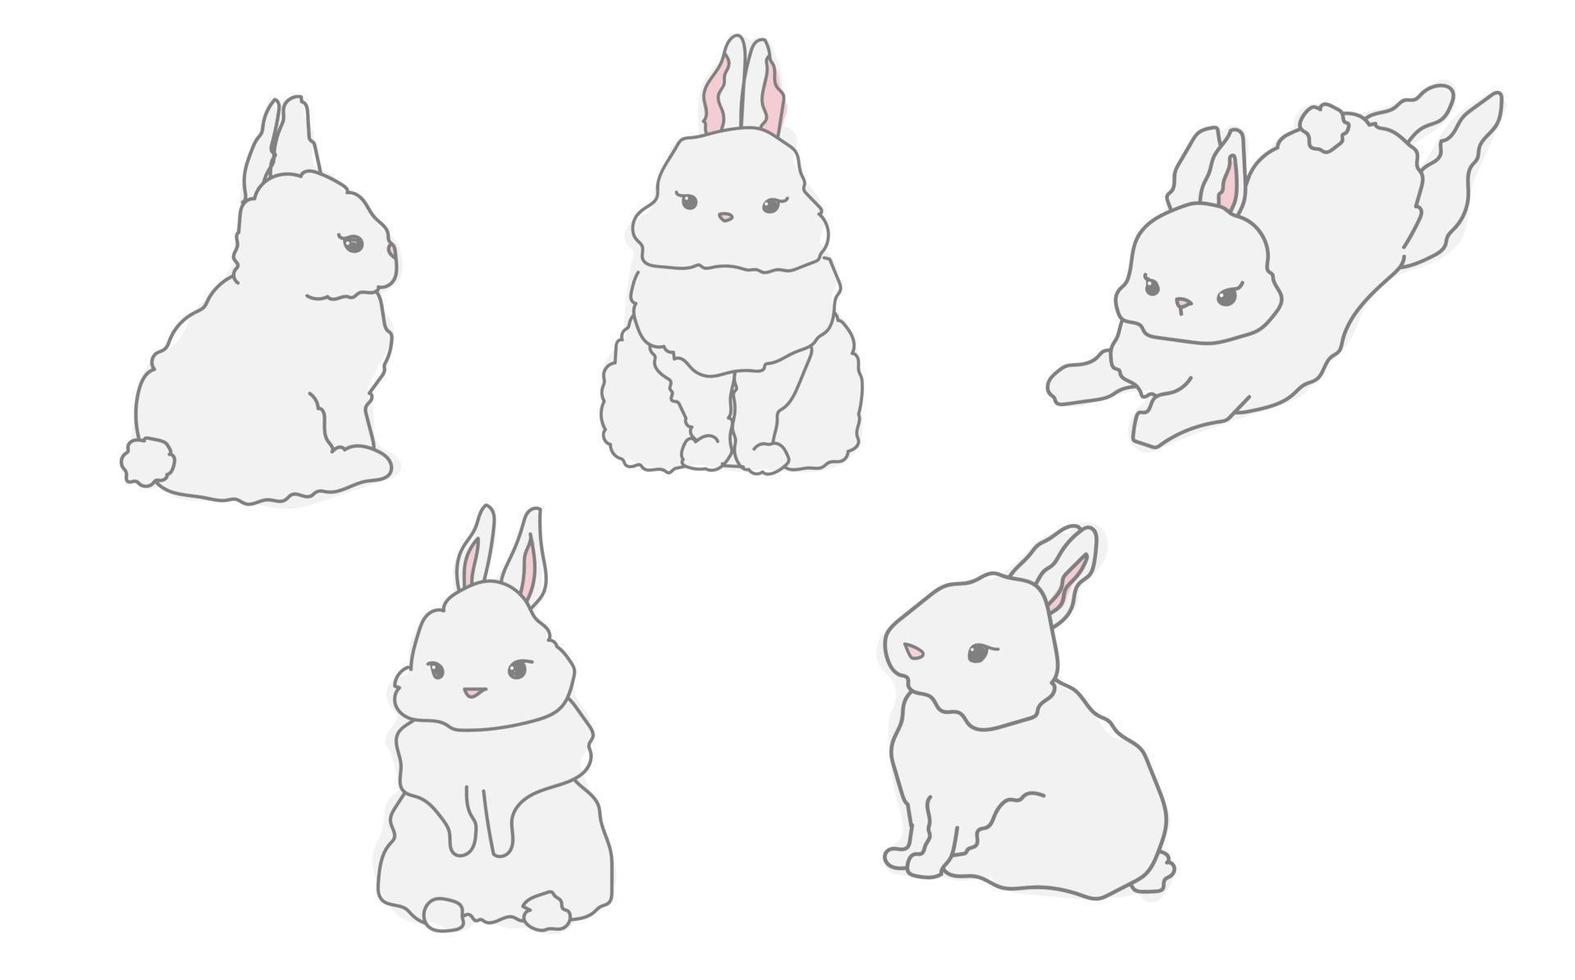 süßes baby weißes kaninchen isolierte linie doodle illustrationssammlung vektor